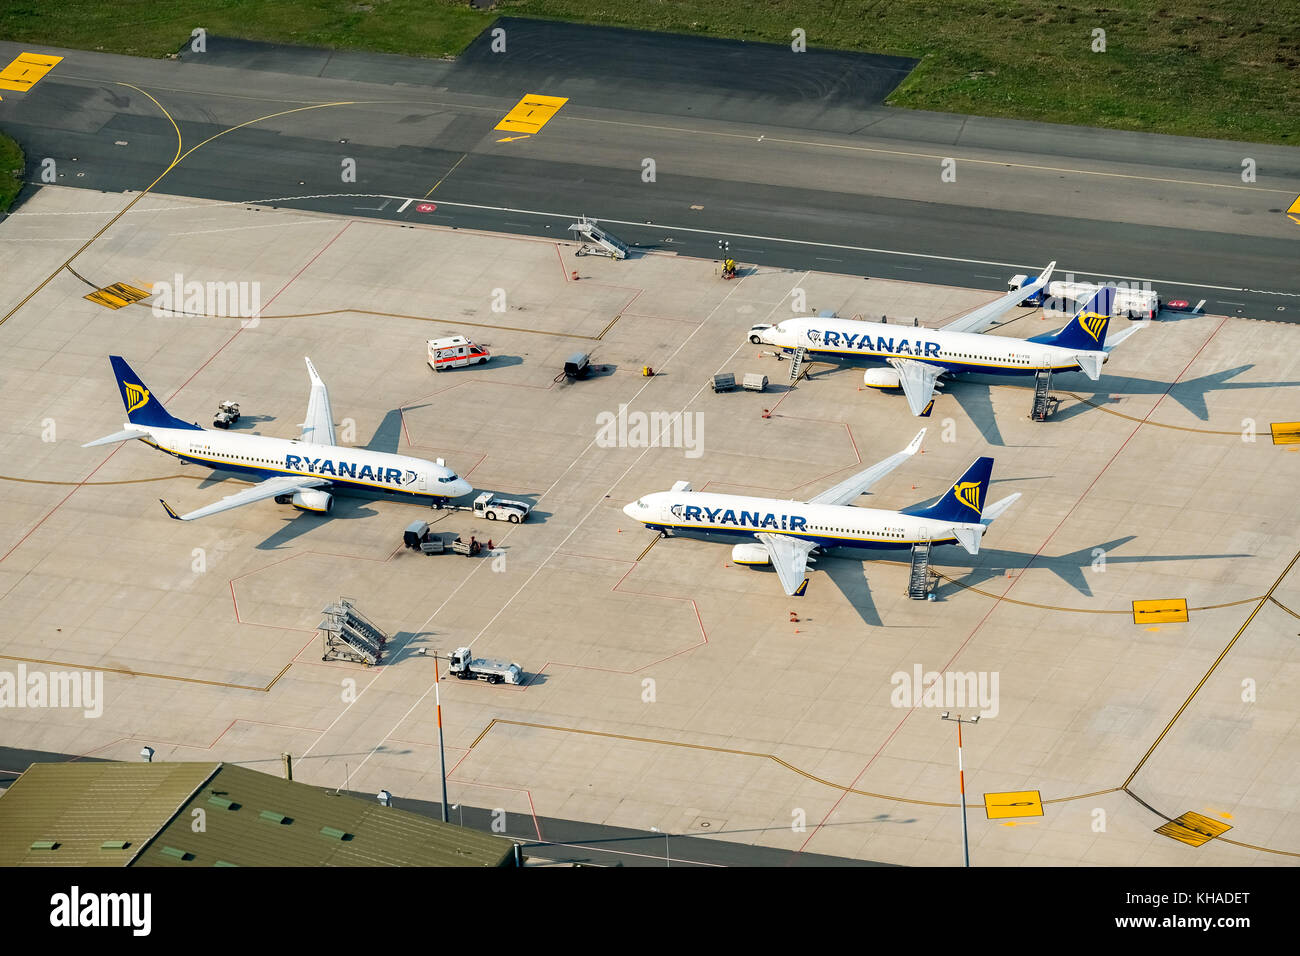 Los aviones de la aerolínea Ryan-Air en el aeropuerto, el aeropuerto de Weeze, Düsseldorf, Renania del Norte-Westfalia, Alemania Foto de stock